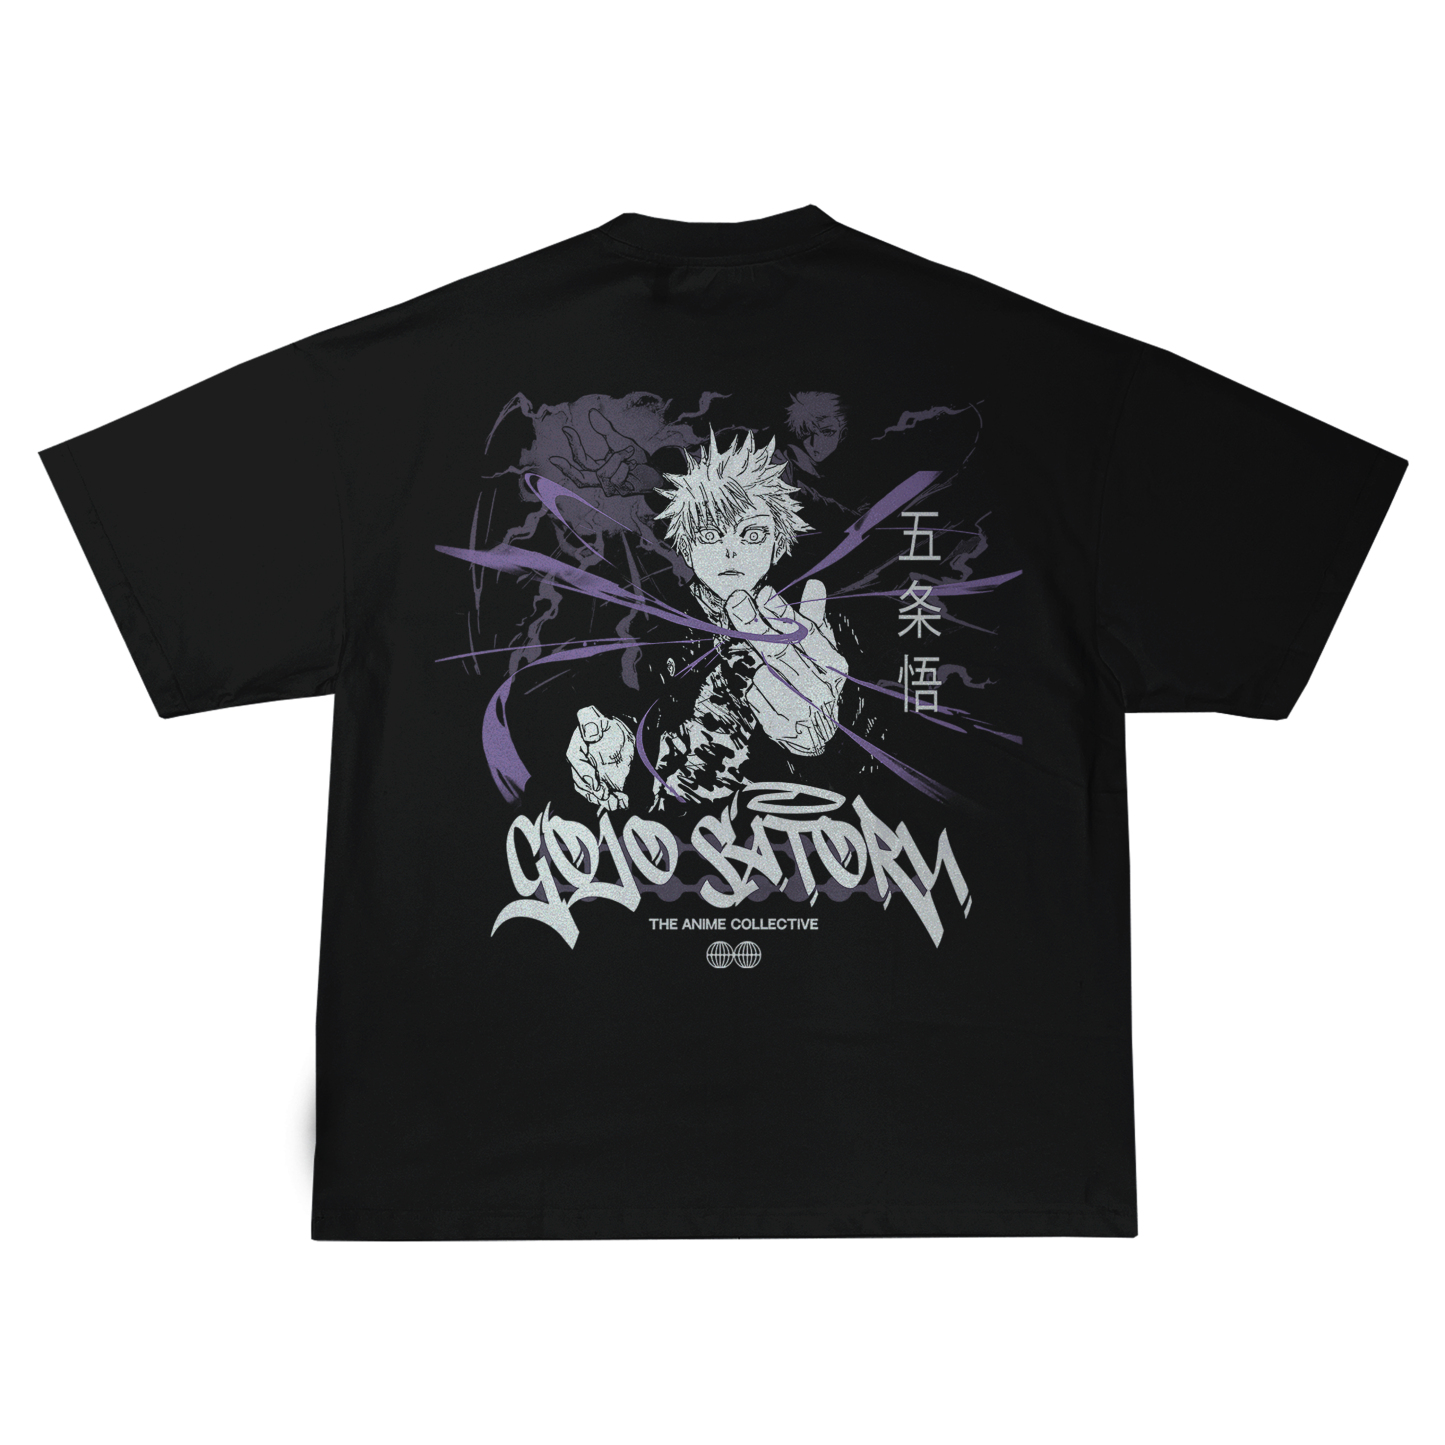 Gojo Satoru Jujutsu Kaisen | T-Shirt